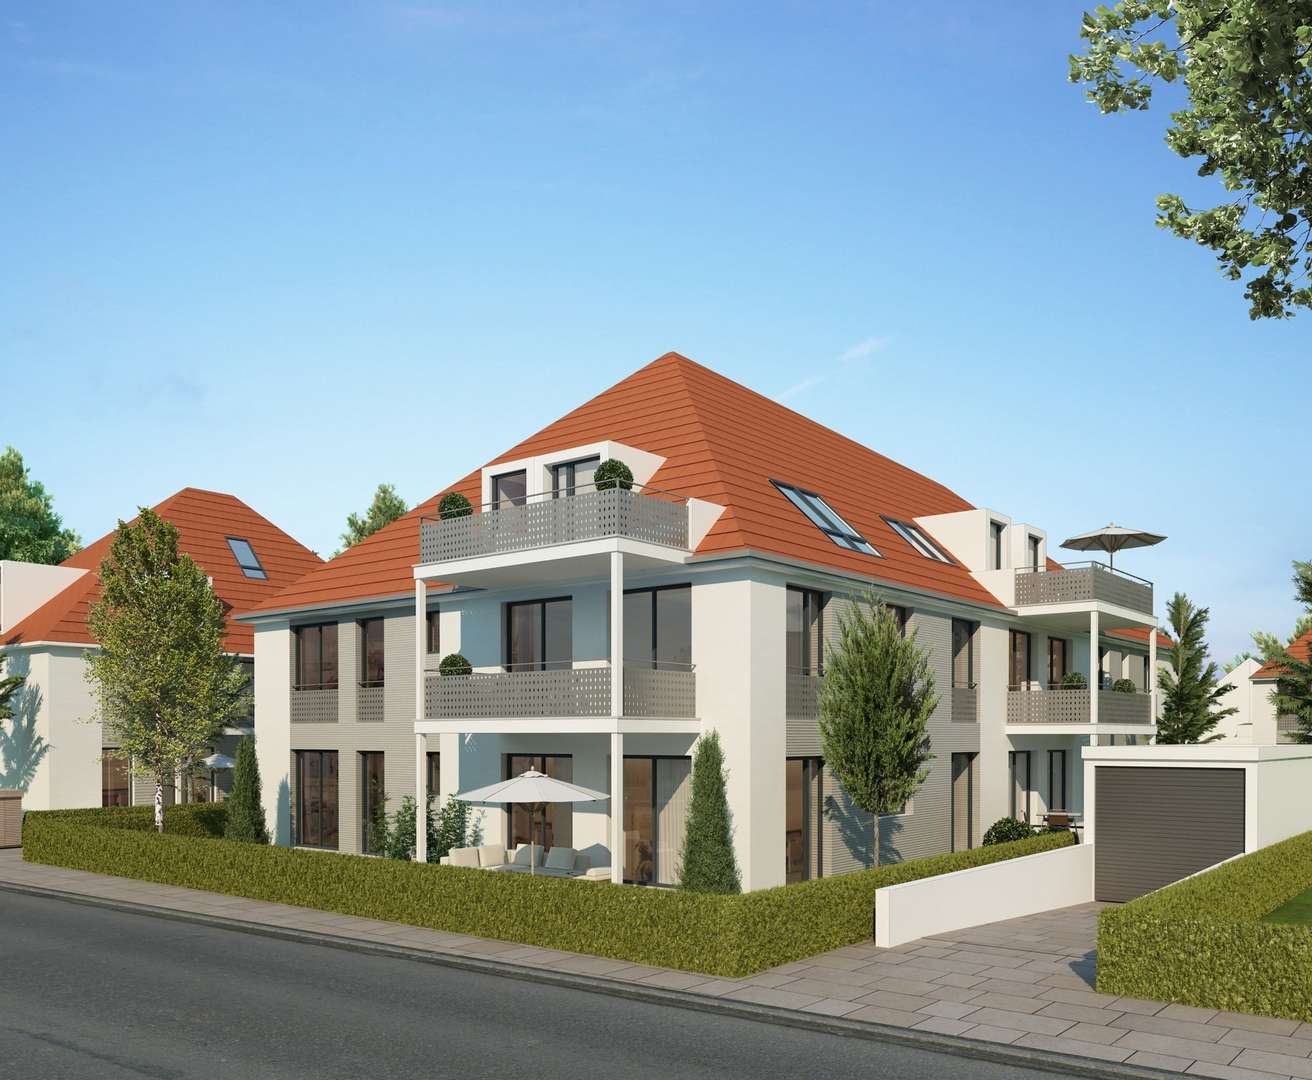 Haus 5 - Erdgeschosswohnung in 81476 München mit 63m² kaufen